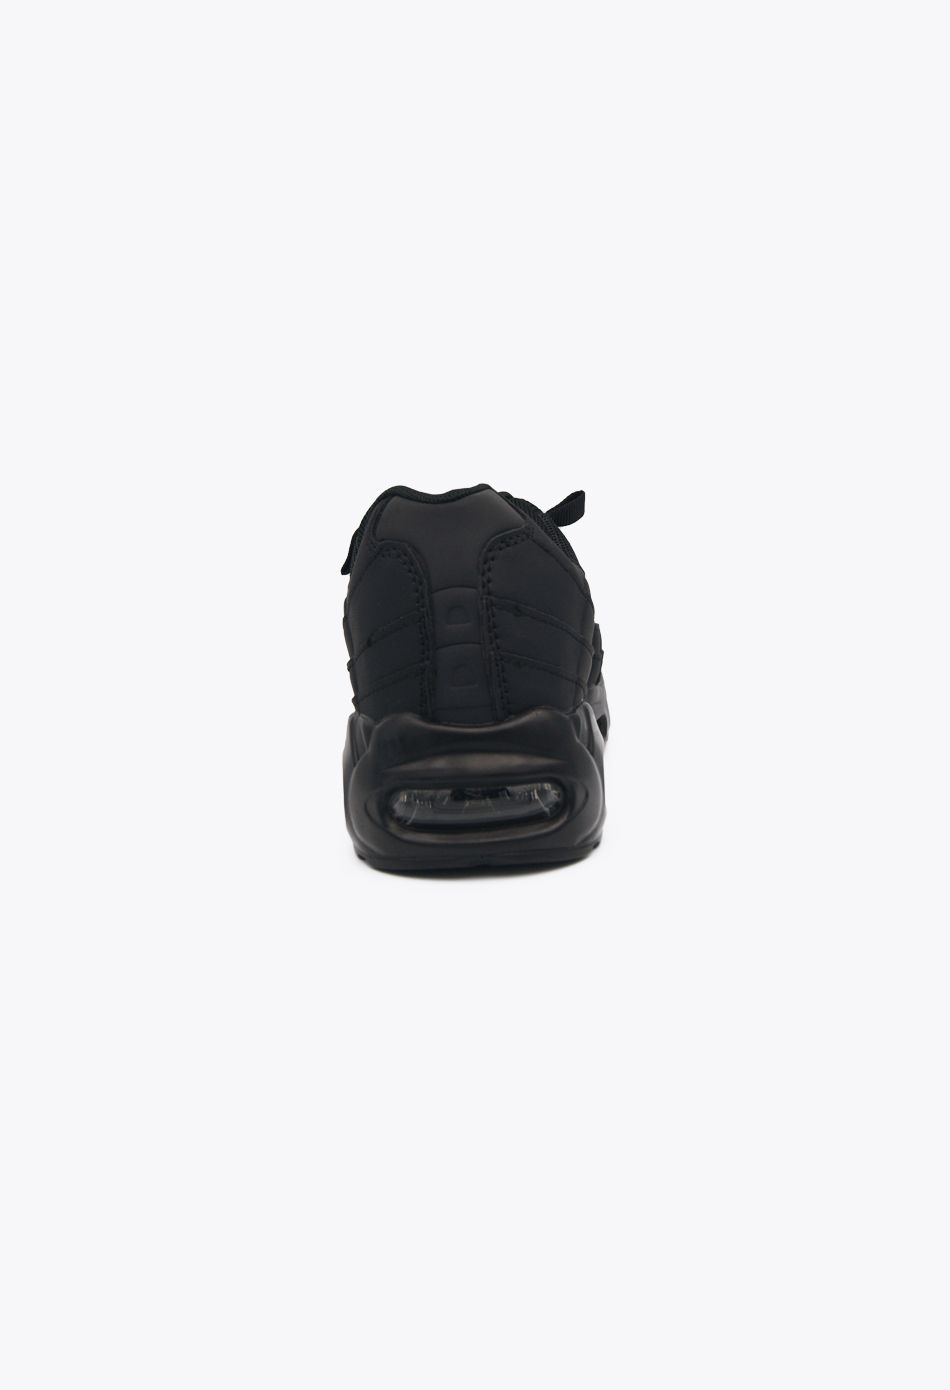 Ανδρικά Αθλητικά Παπούτσια για Τρέξιμο με αεροσόλα Μαύρο / M-95-black ΑΘΛΗΤΙΚΑ & SNEAKERS joya.gr